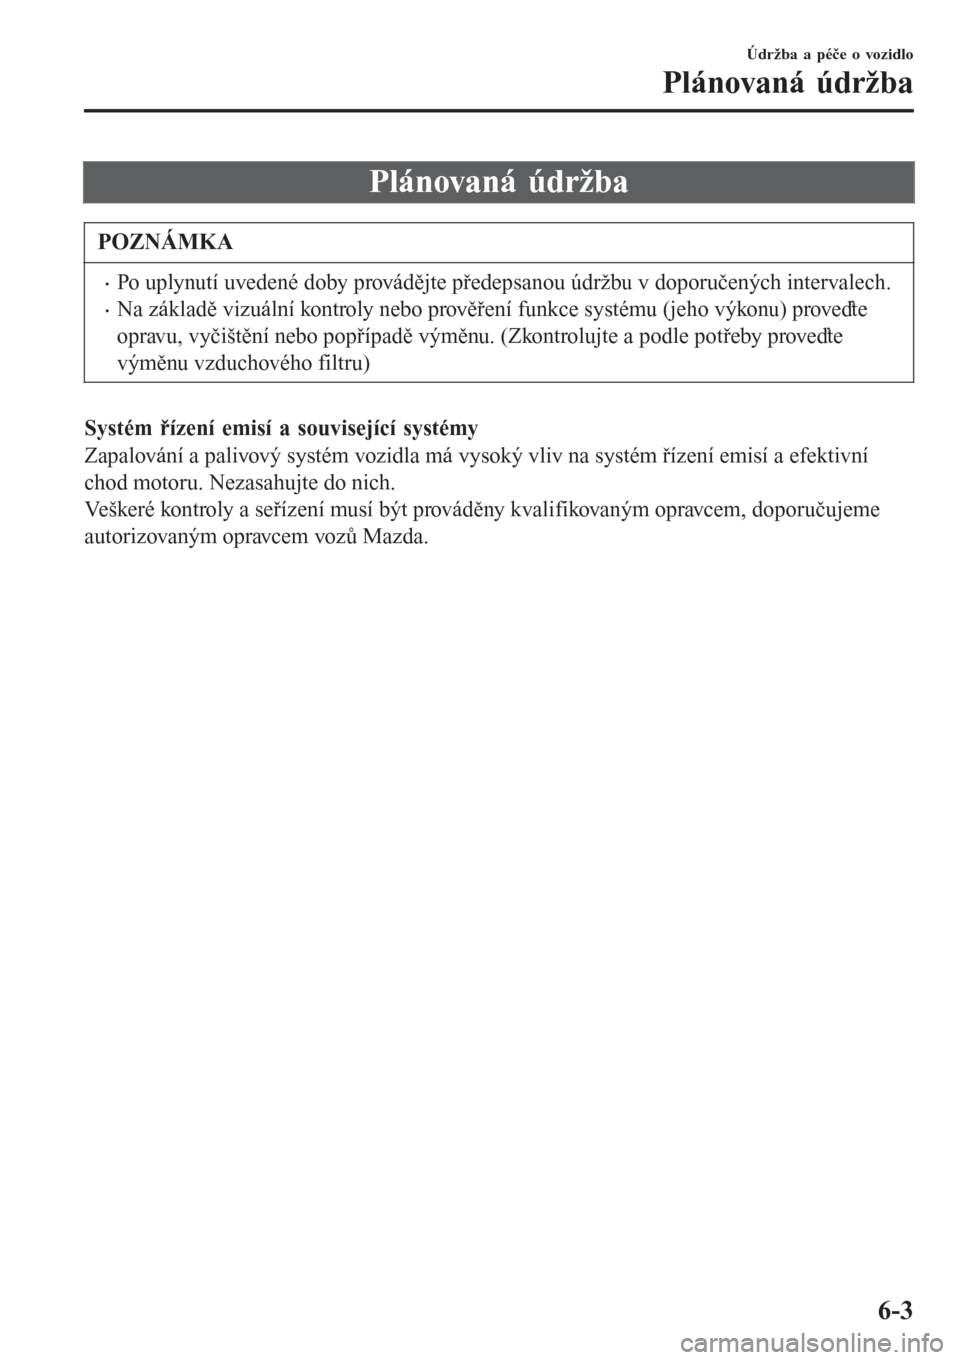 MAZDA MODEL CX-3 2015  Návod k obsluze (in Czech) Plánovaná údržba
POZNÁMKA
•Po uplynutí uvedené doby provádějte předepsanou údržbu v doporučených intervalech.
•Na základě vizuální kontroly nebo prověření funkce systému (jeh